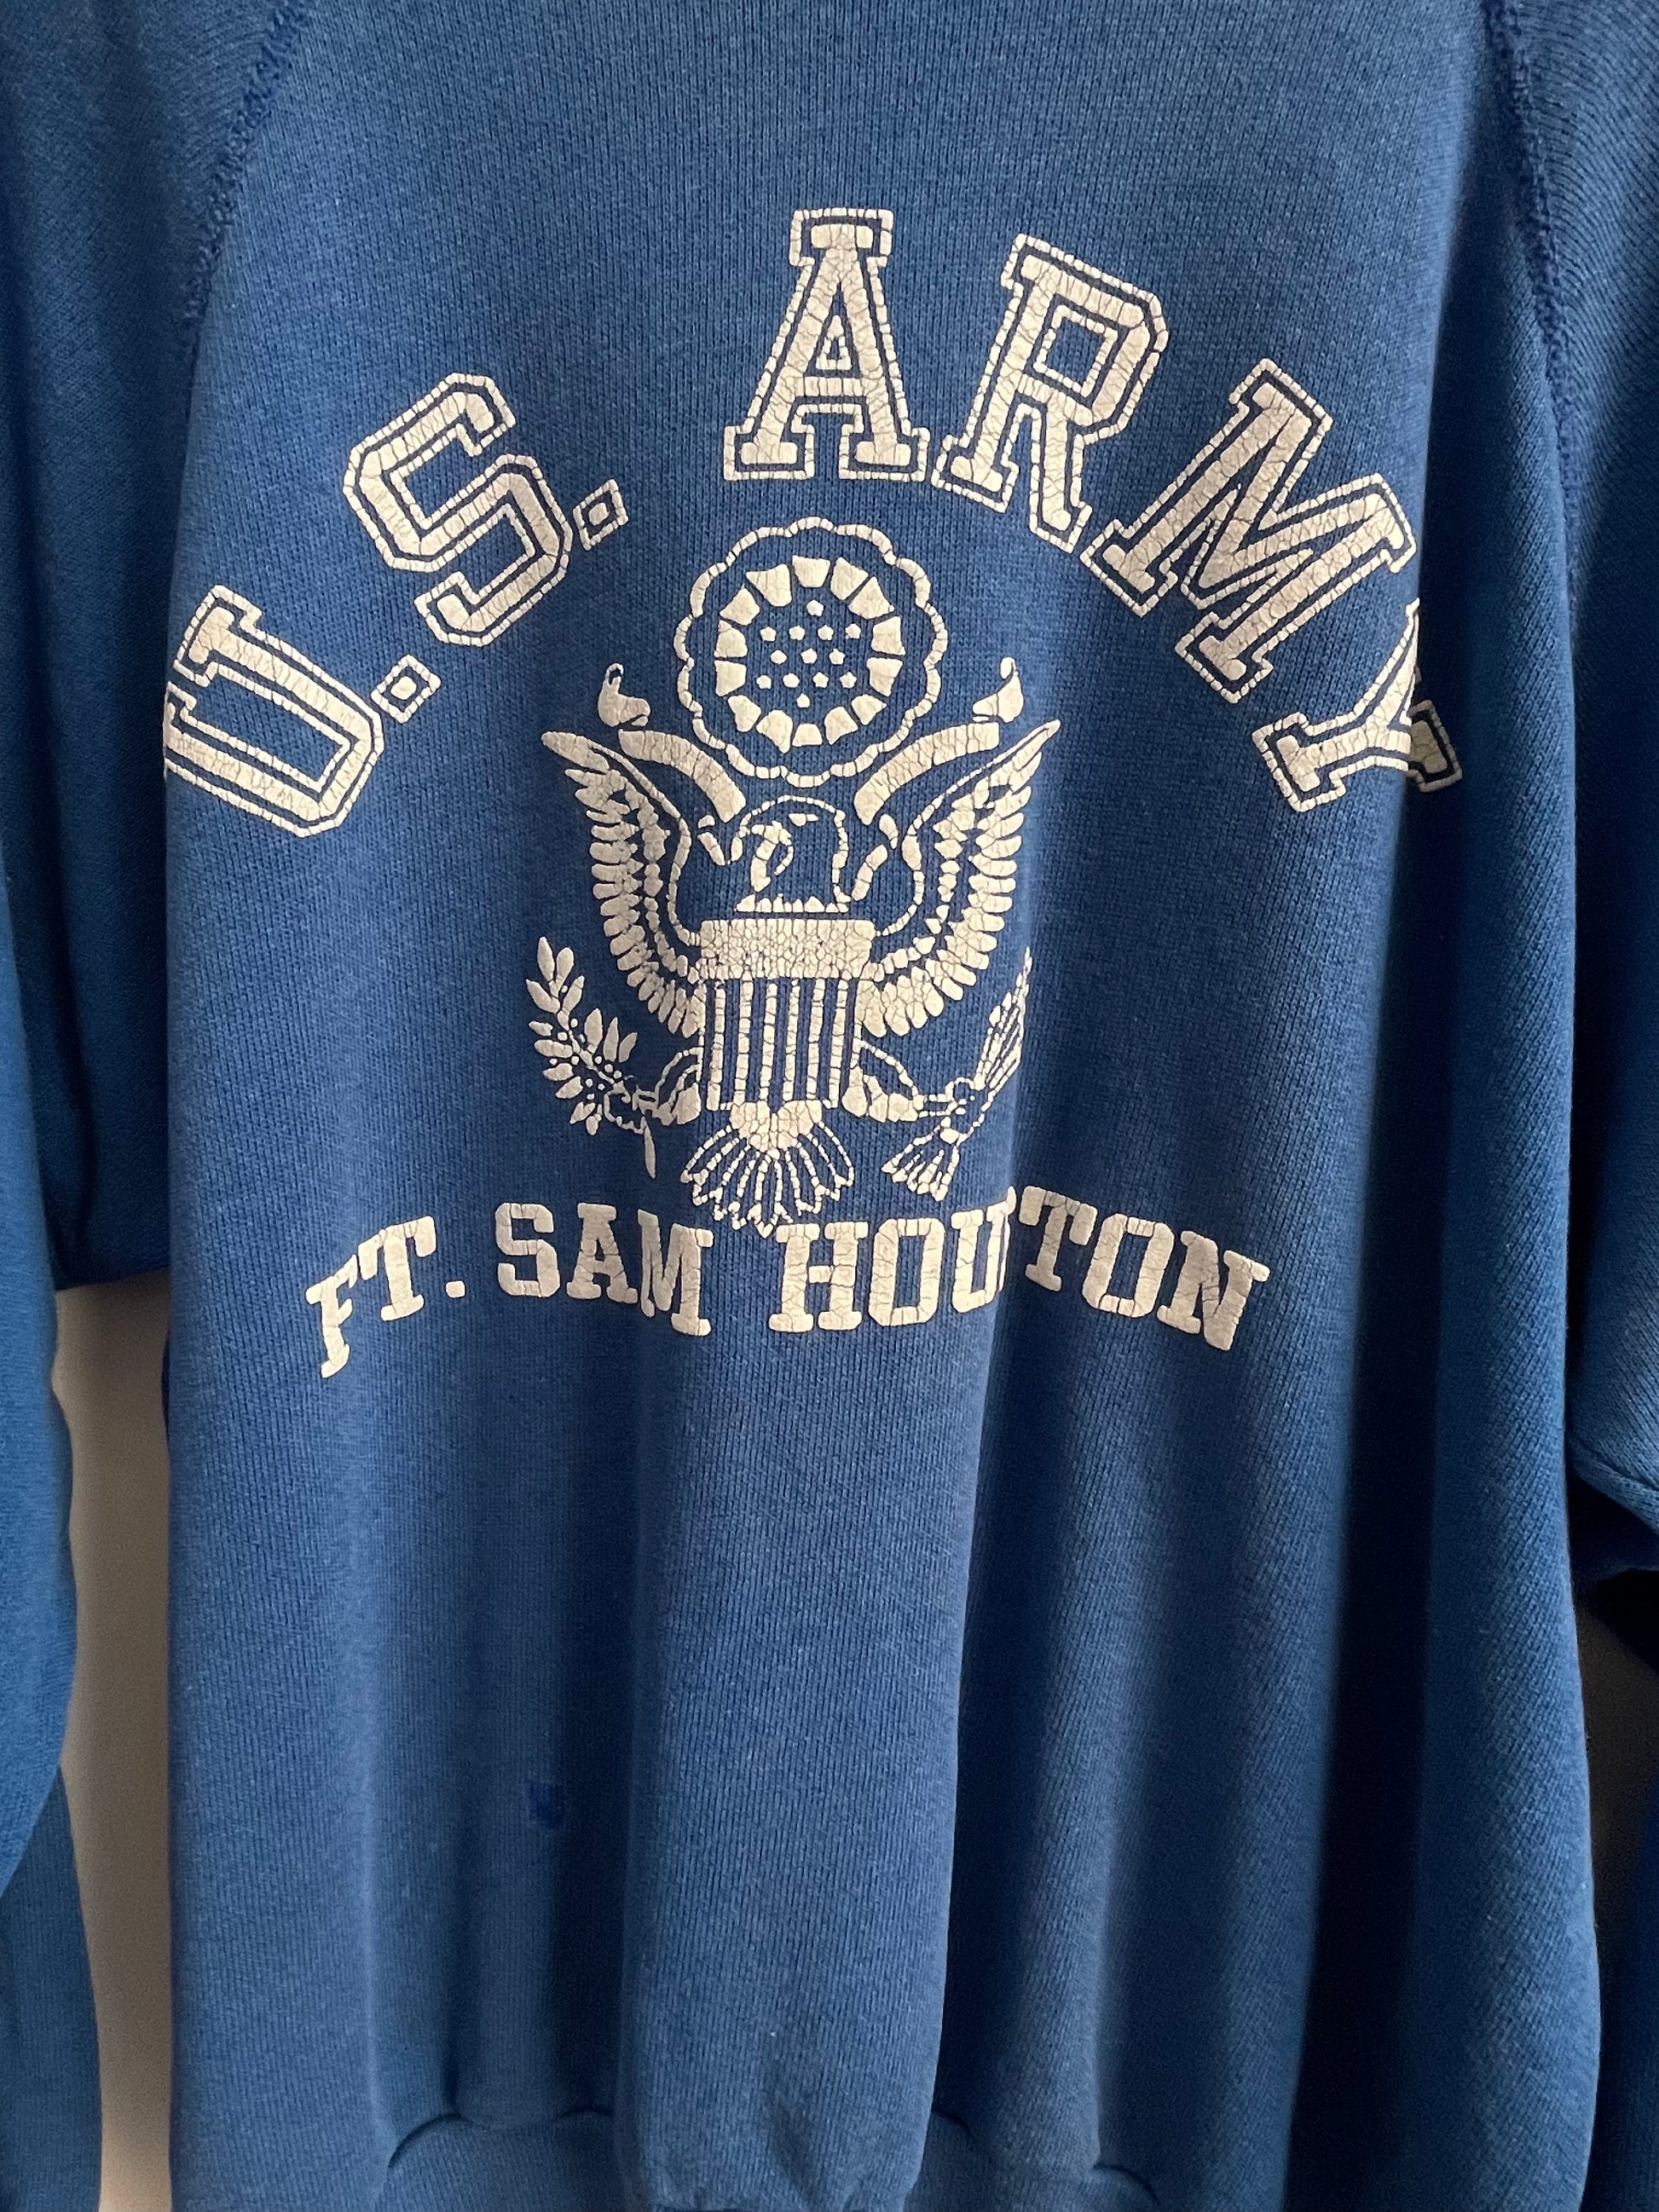 Genuine Vintage 1960s US Army Ft. Sam Houston Sweatshirt